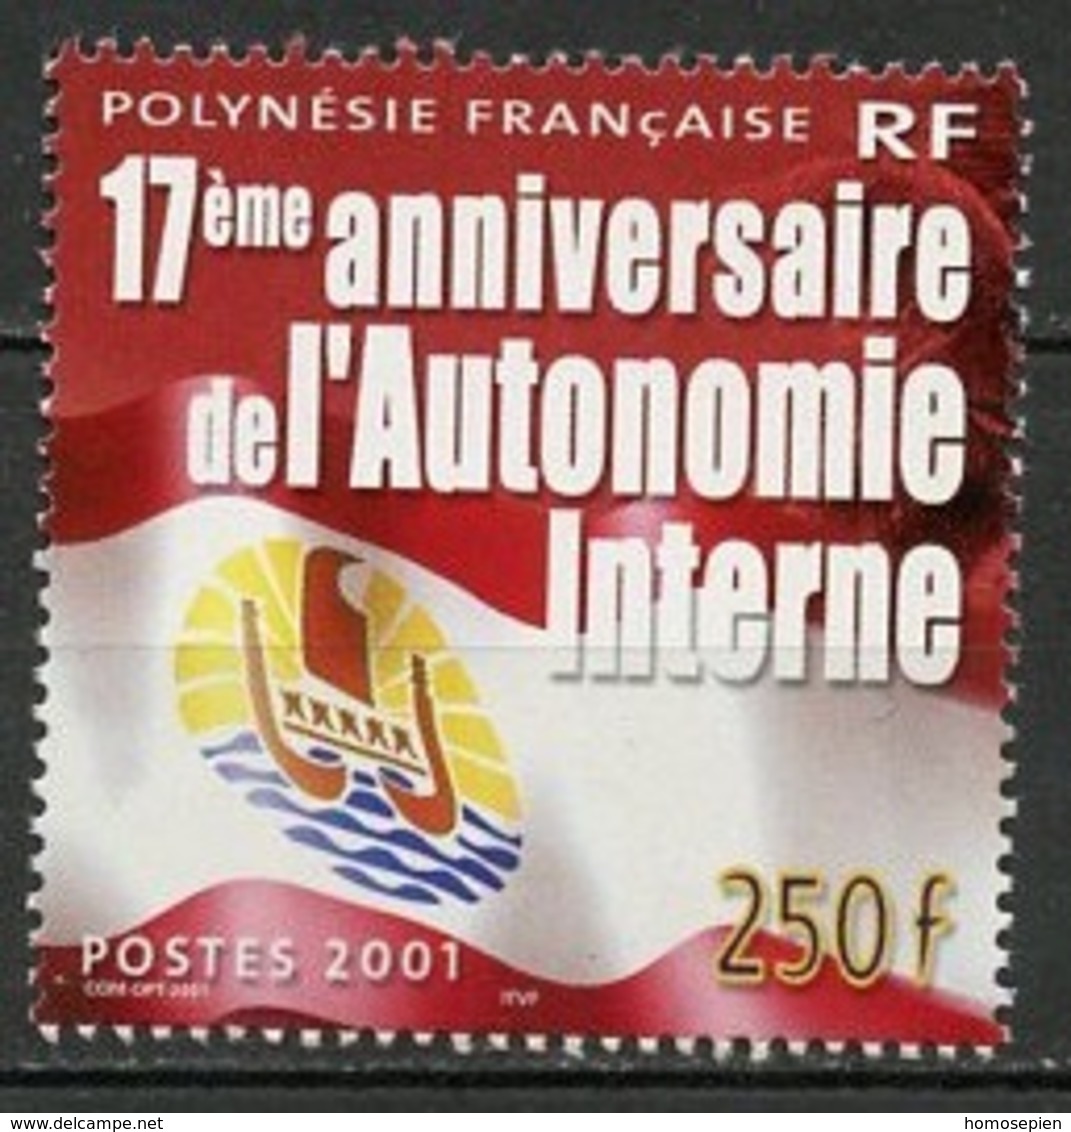 Polynésie Française - Polynesien - Polynesia 2001 Y&T N°644 - Michel N°845 *** - 250f Autonomie Interne - Neufs